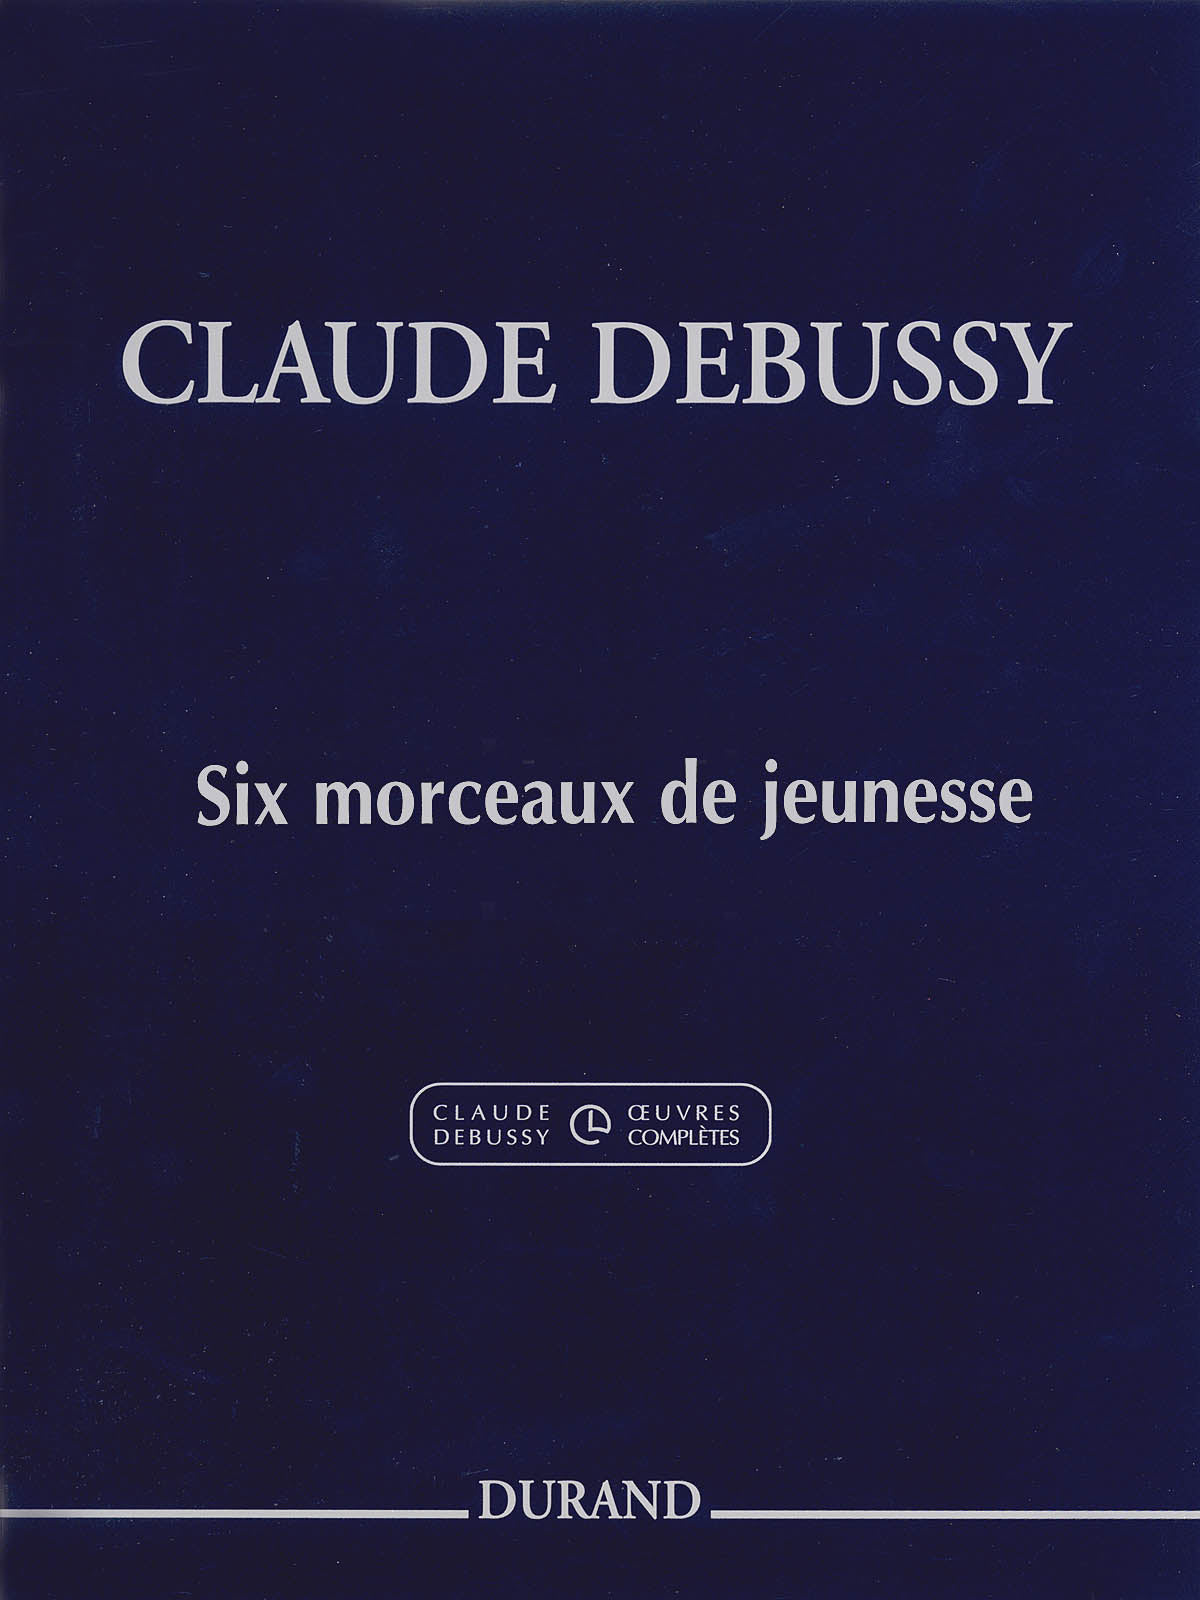 Debussy: 6 Morceaux de jeunesse